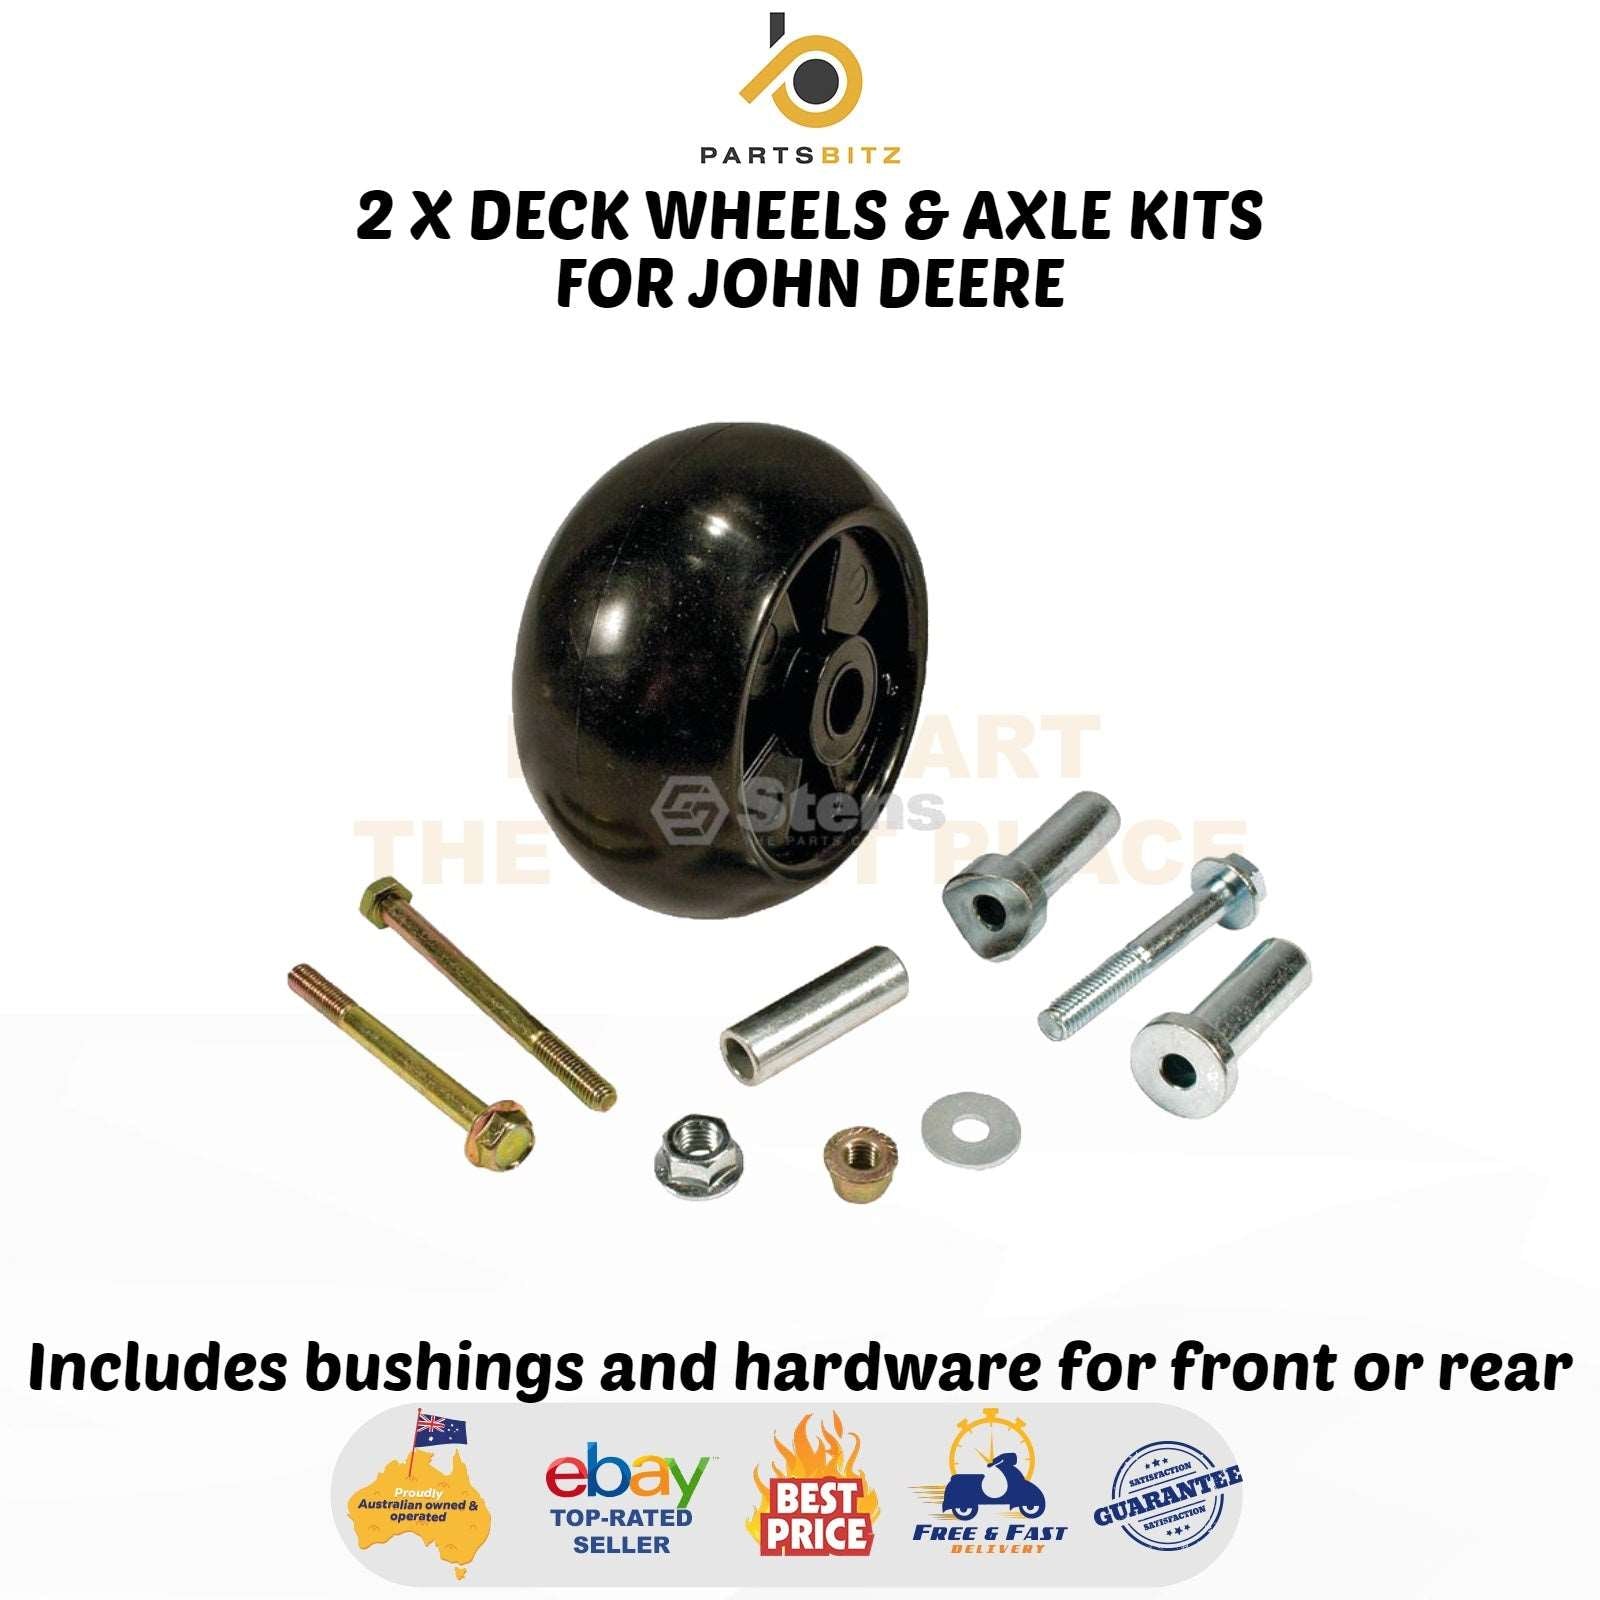 2 X Deck Wheels & Axle Kits for John Deere Ride on Mowers AM116299  AM133602